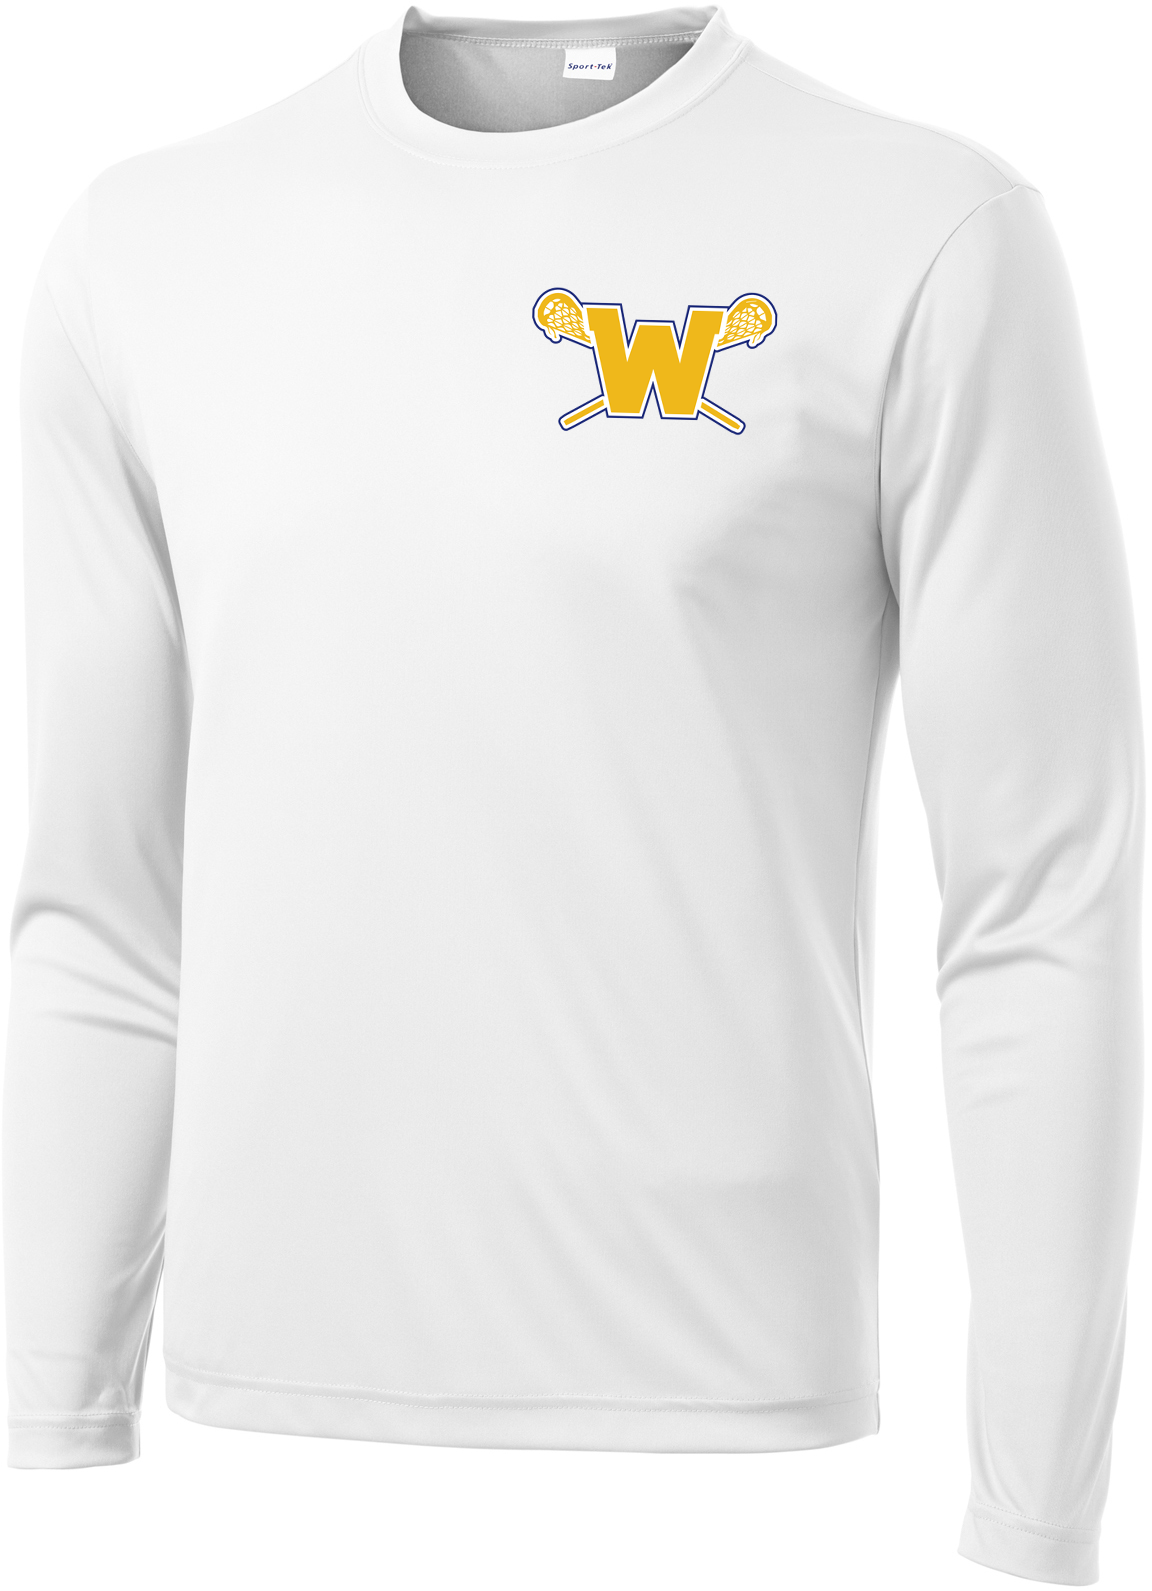 Webster Lacrosse Men's White Long Sleeve Performance Shirt